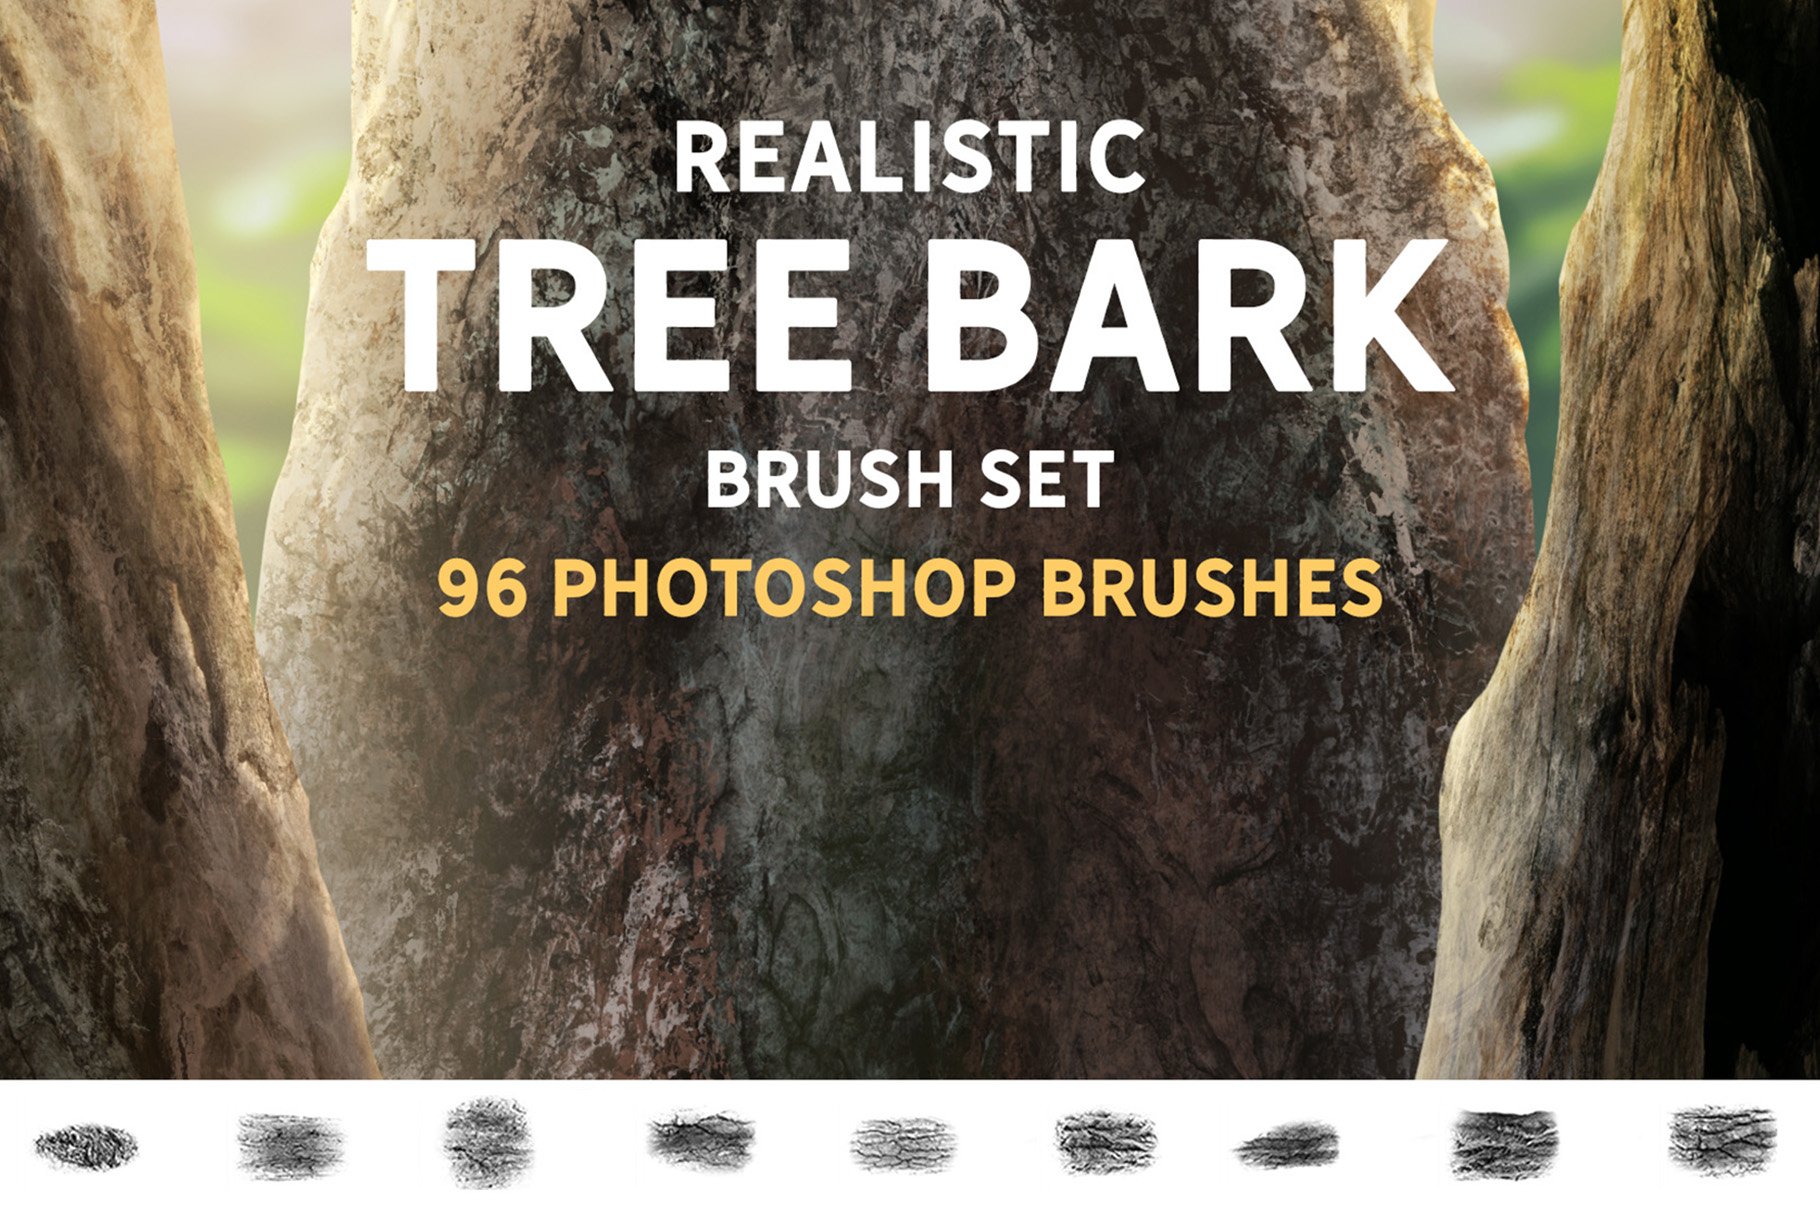 Realistic Tree bark brush setcover image.